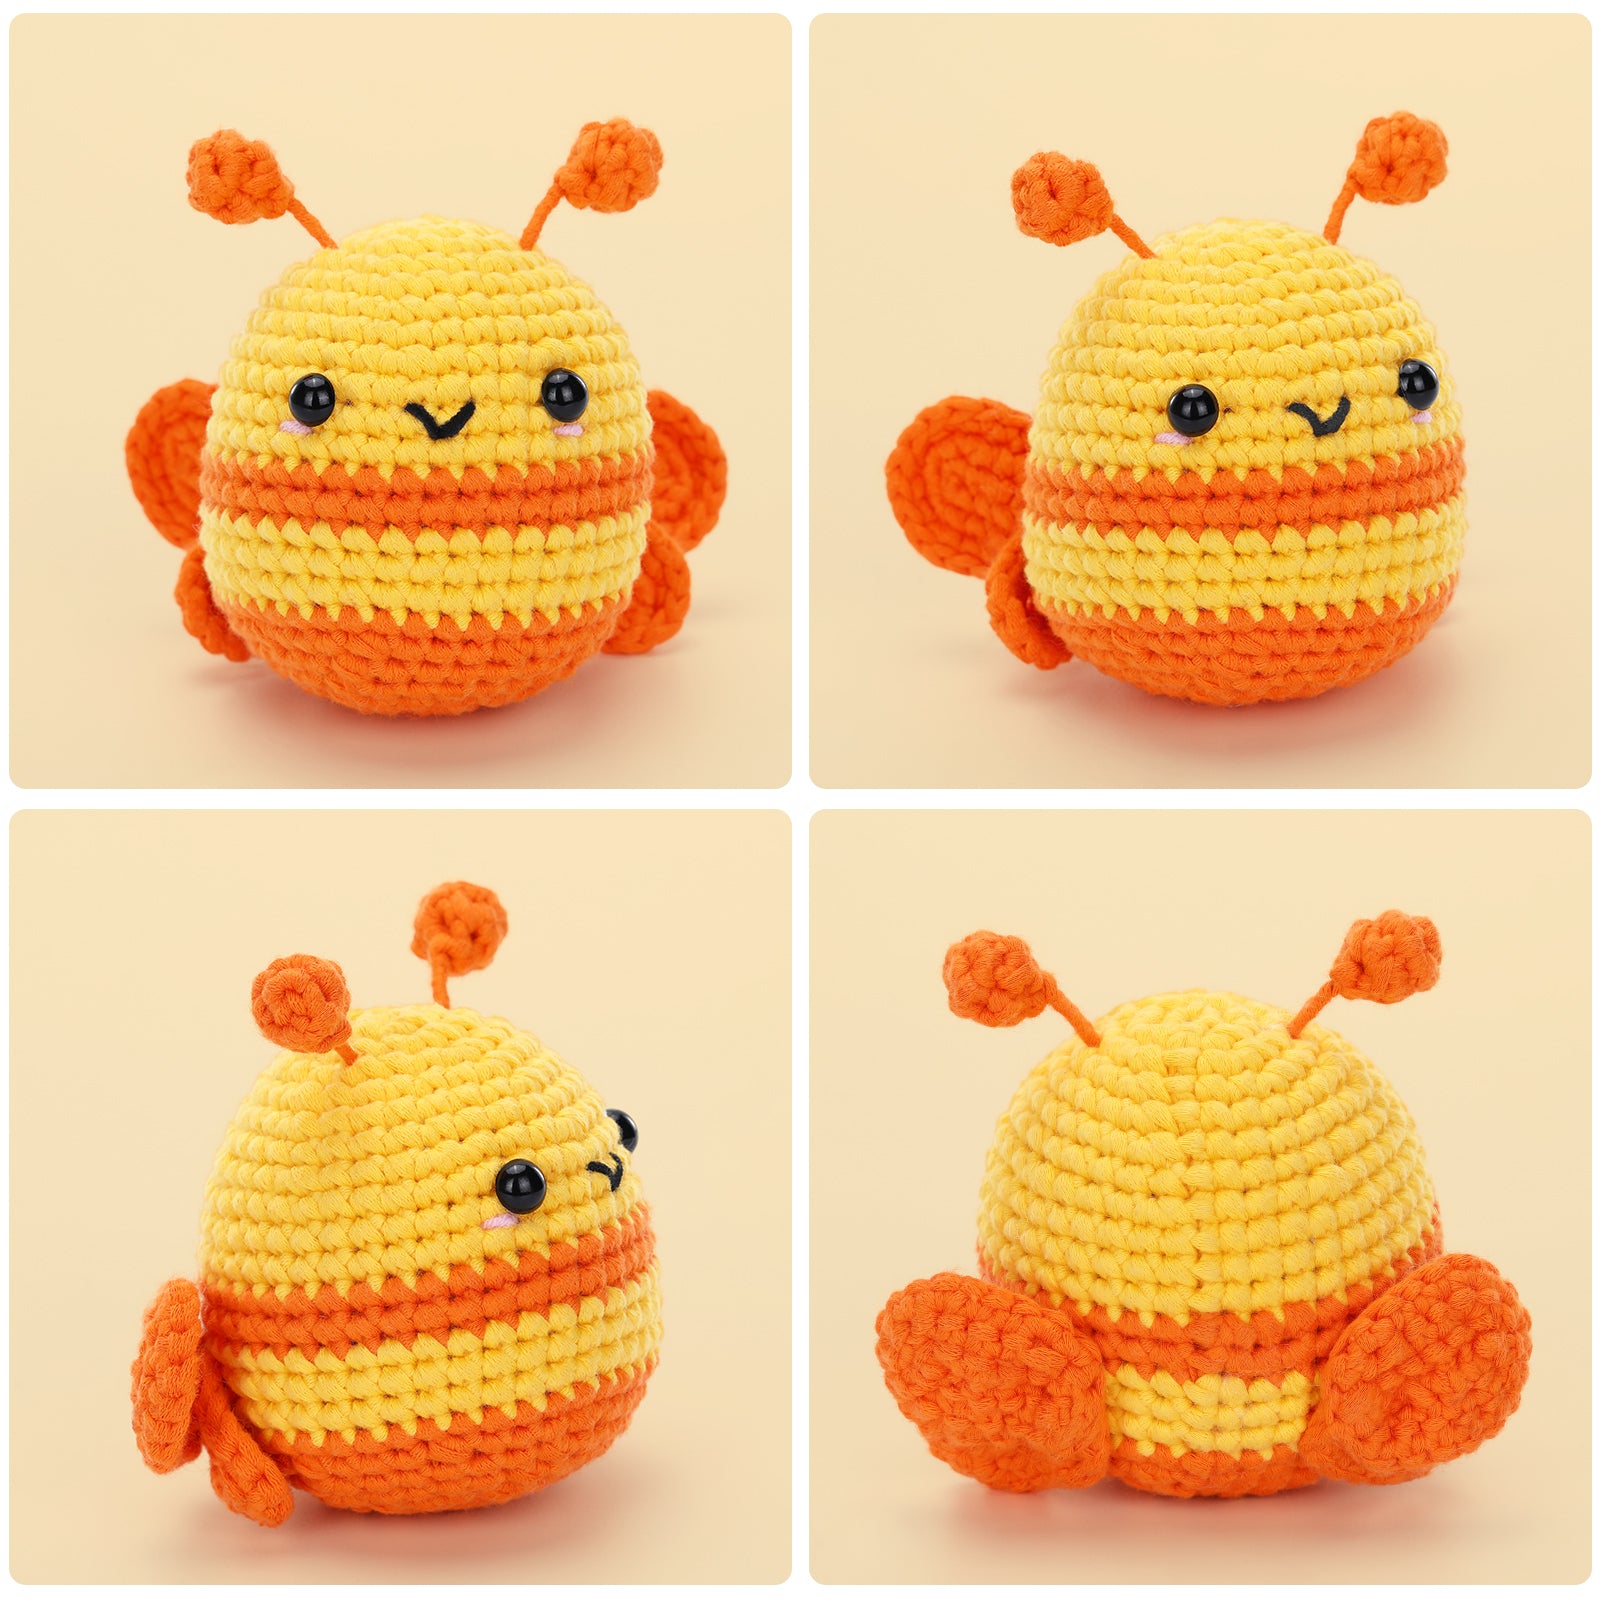 tsobrush turtle bee crochet kit for beginners - diy cute crocheting kit for  beginners, with step-step